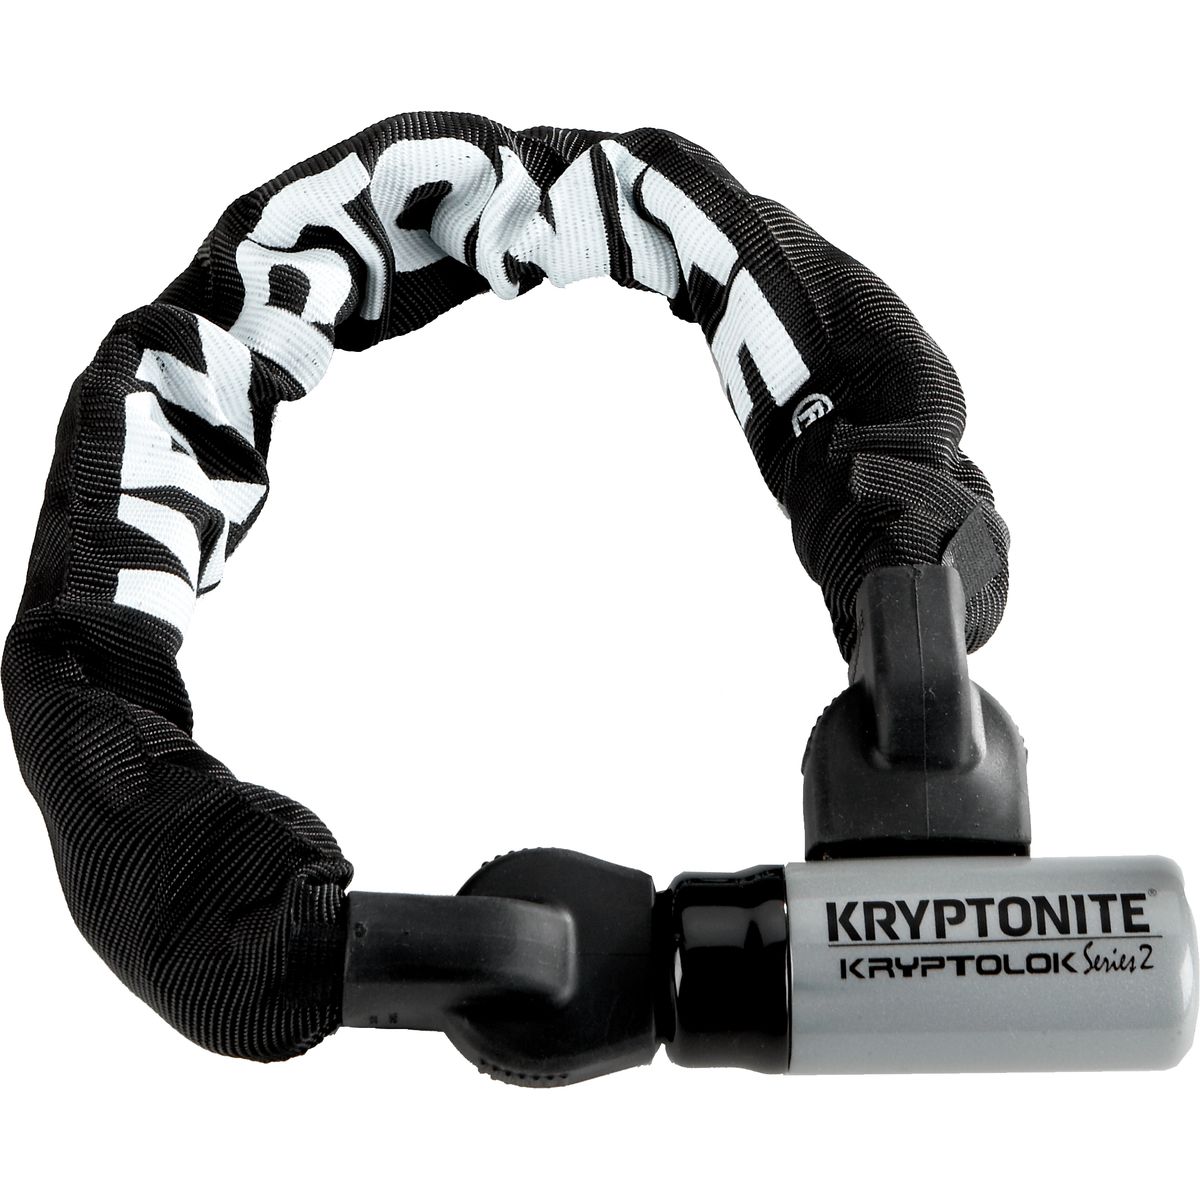 Kryptonite KryptoLok Series 2 955 Mini Integrated Chain Lock